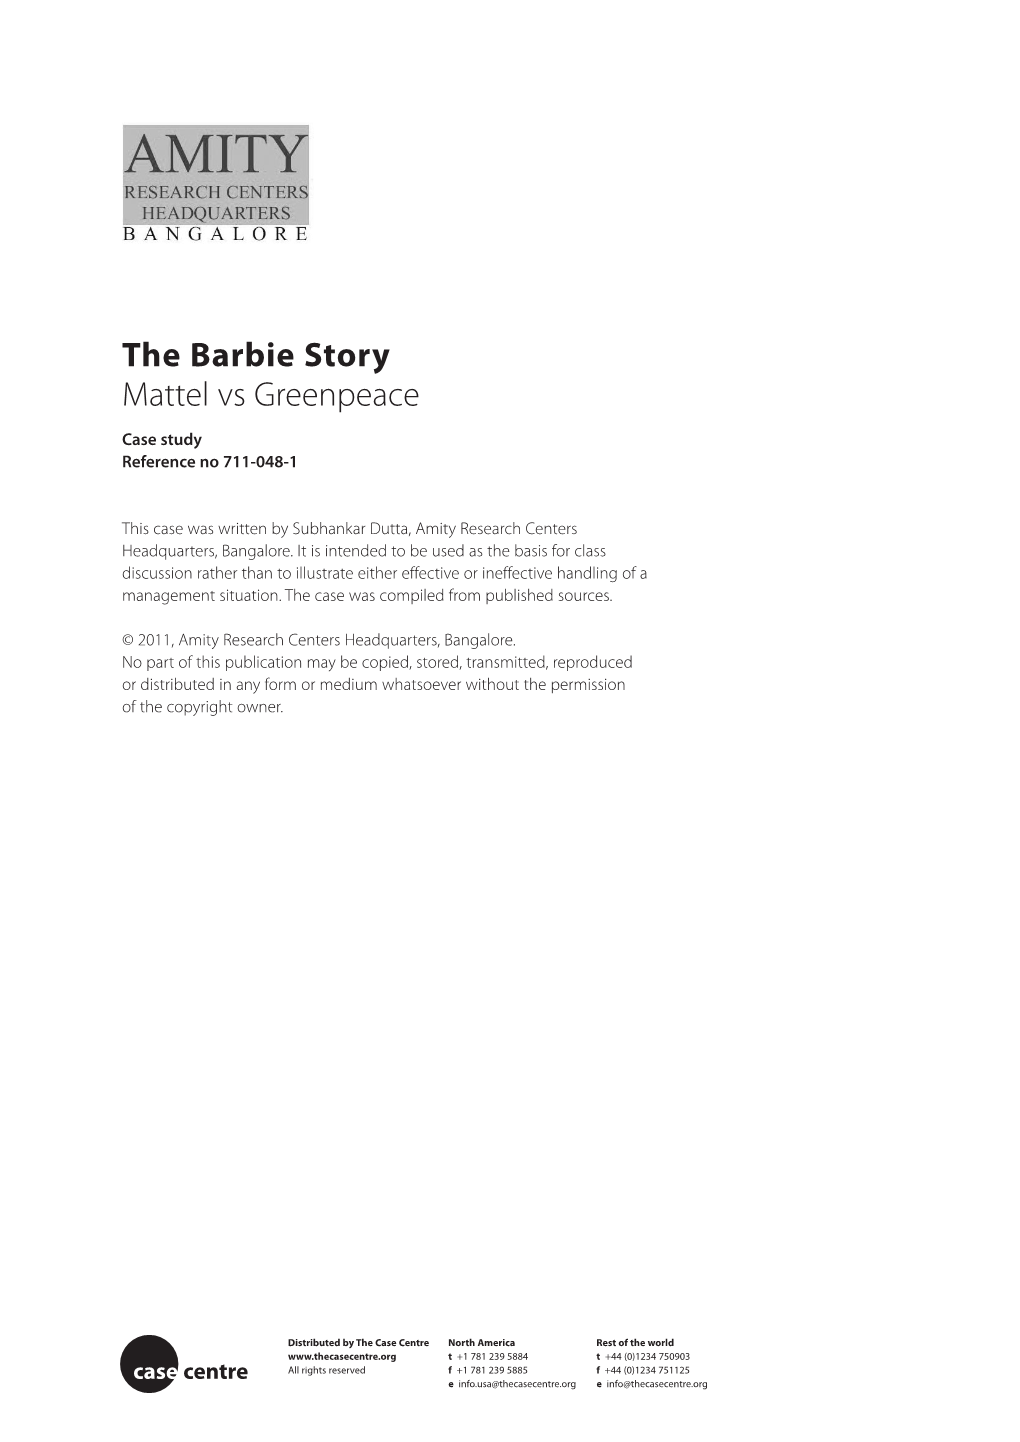 The Barbie Story Mattel Vs Greenpeace Case Study Reference No 711-048-1